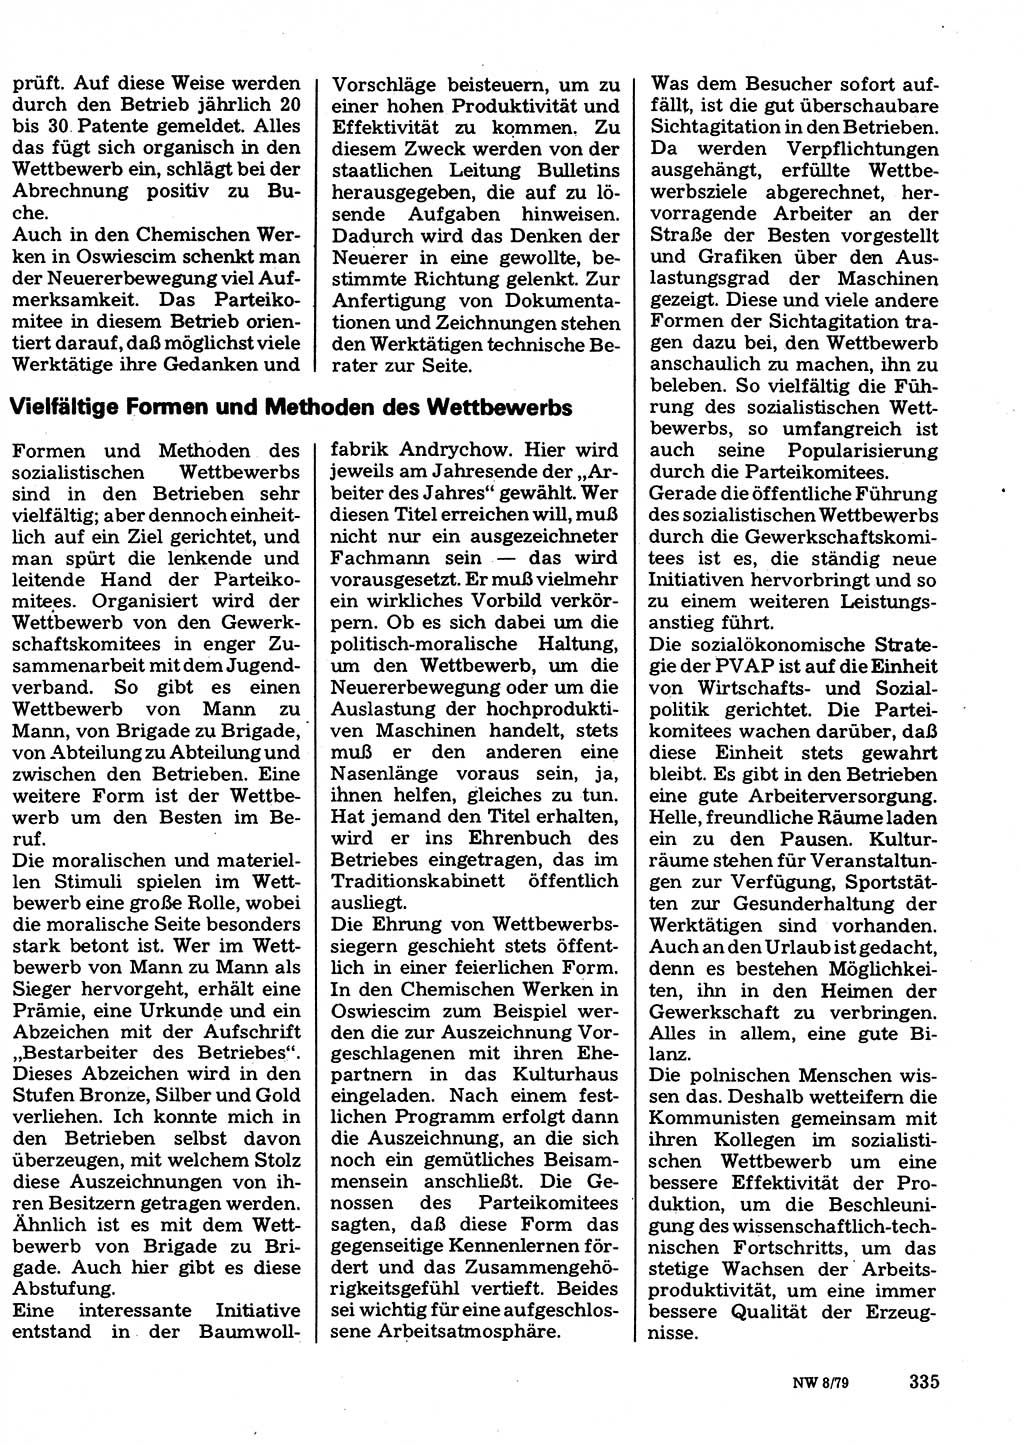 Neuer Weg (NW), Organ des Zentralkomitees (ZK) der SED (Sozialistische Einheitspartei Deutschlands) für Fragen des Parteilebens, 34. Jahrgang [Deutsche Demokratische Republik (DDR)] 1979, Seite 335 (NW ZK SED DDR 1979, S. 335)